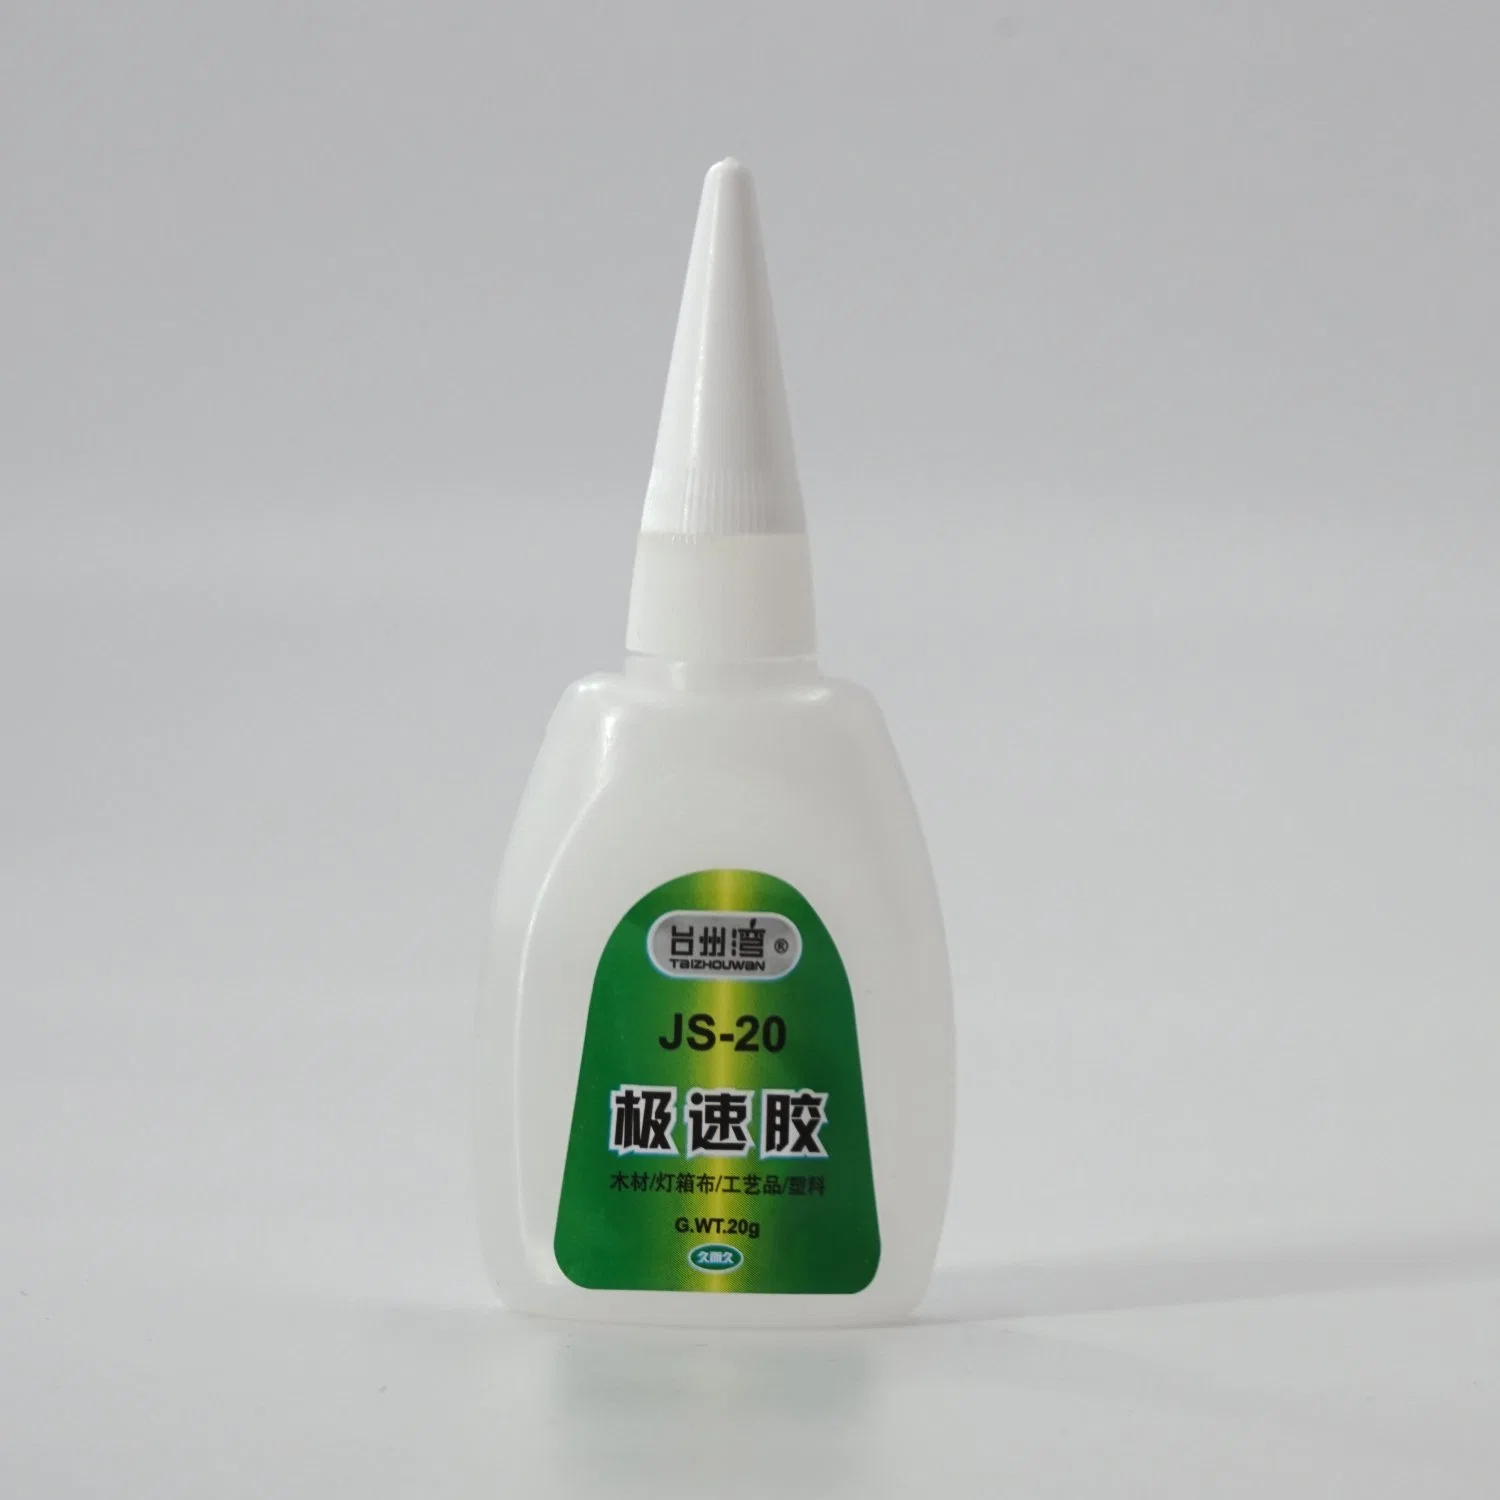 Super Glue Adhesive Glue Rubber Cyanoacrylate Super Glue